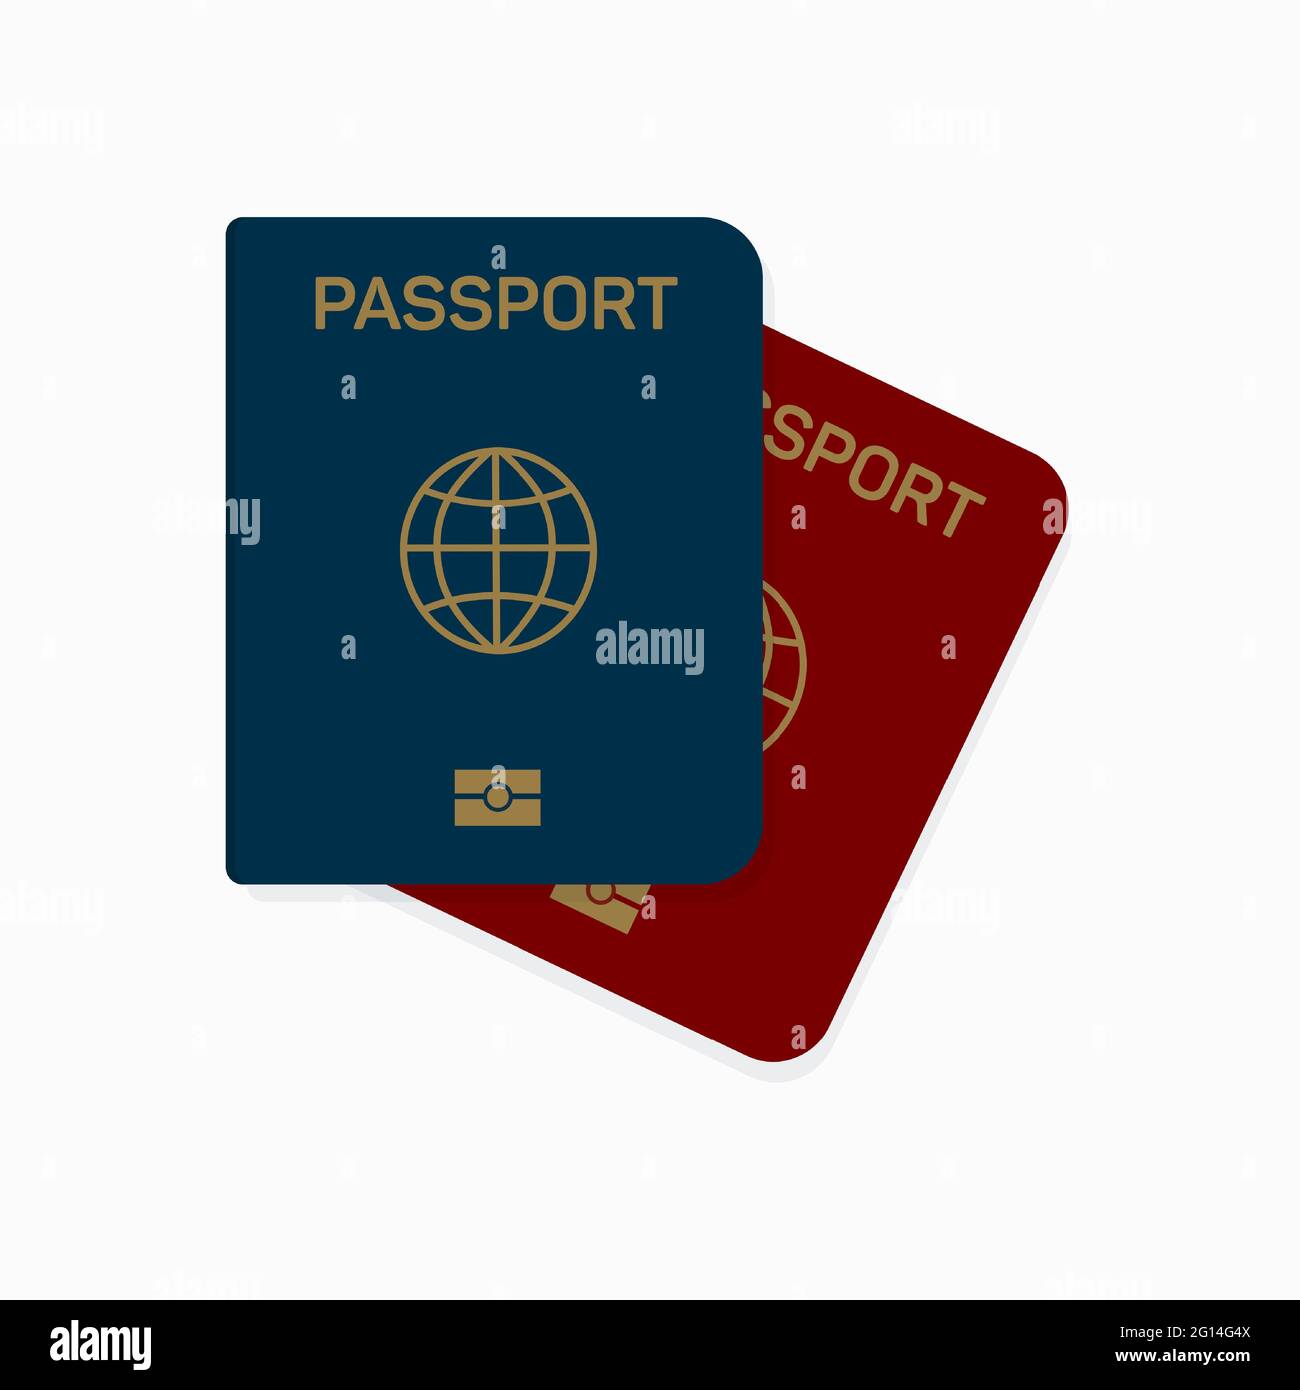 Deckblatt zum internationalen biometrischen Reisepass. Blaue und rote Startseite eines Bürgerausweises. Stock Vektor